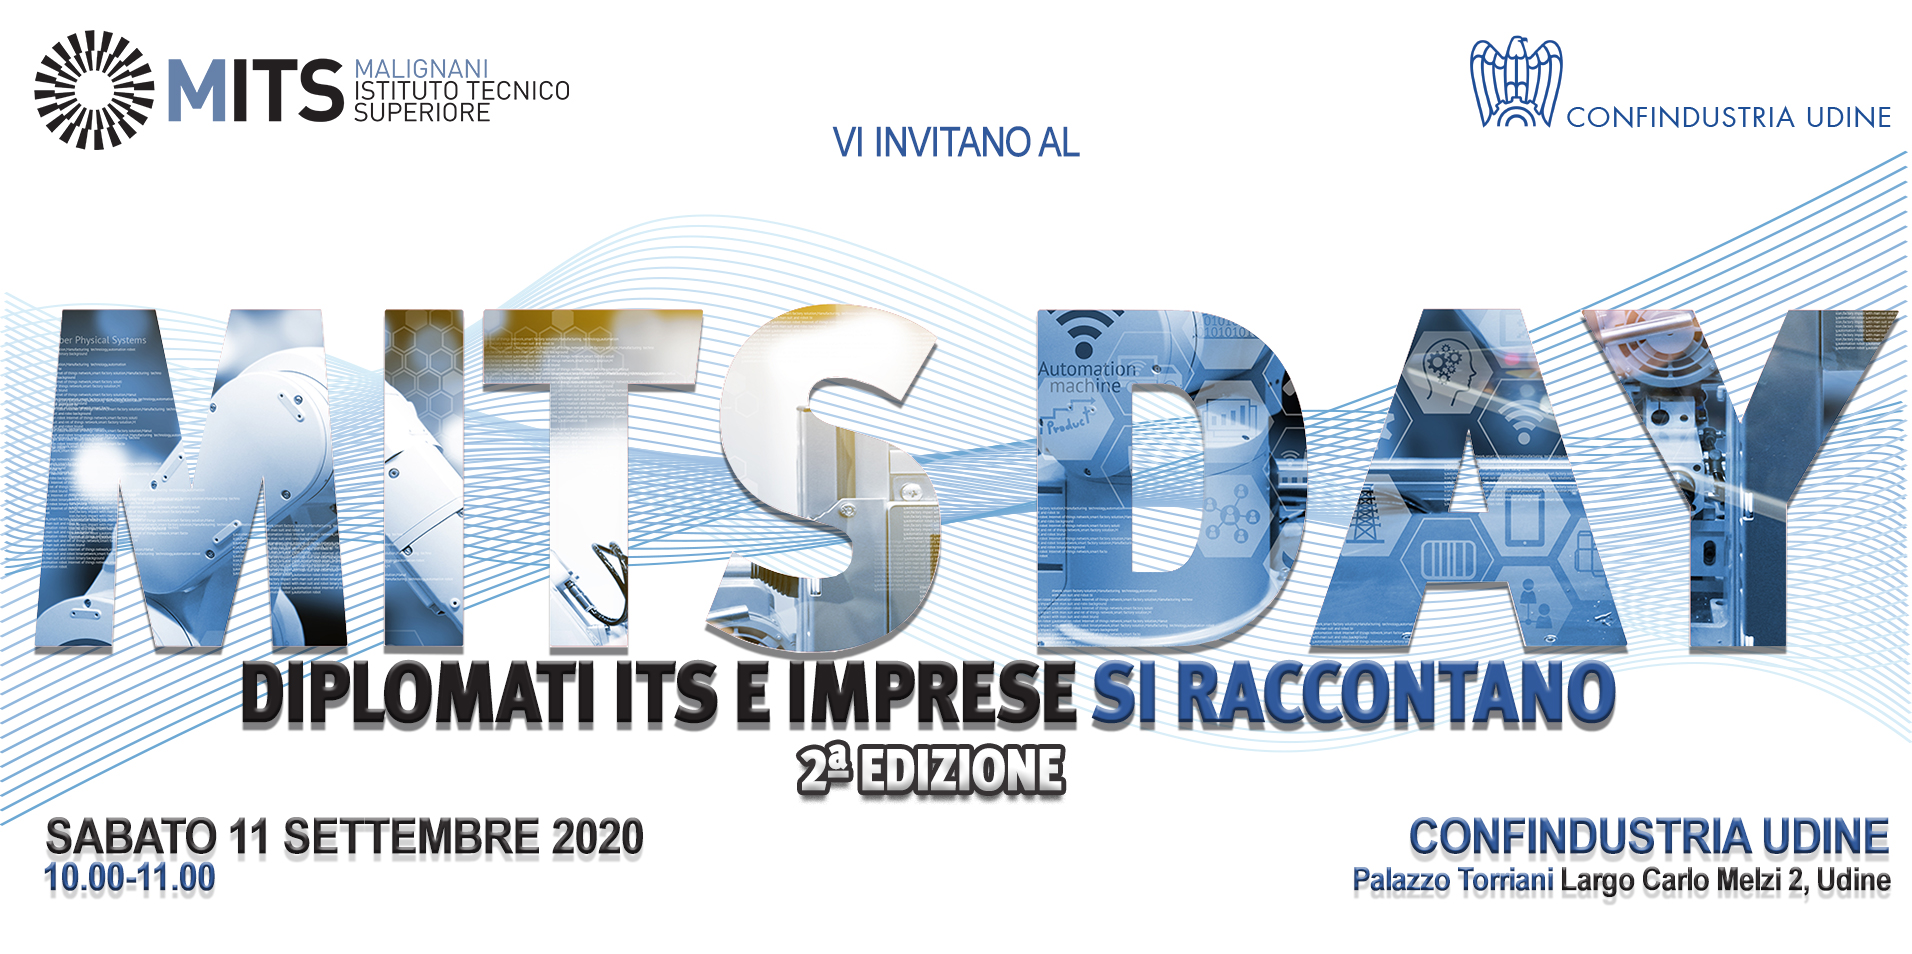 Al momento stai visualizzando “MITS DAY: diplomati ITS e imprese si raccontano” sabato 11 settembre nella sede di Confindustria Udine